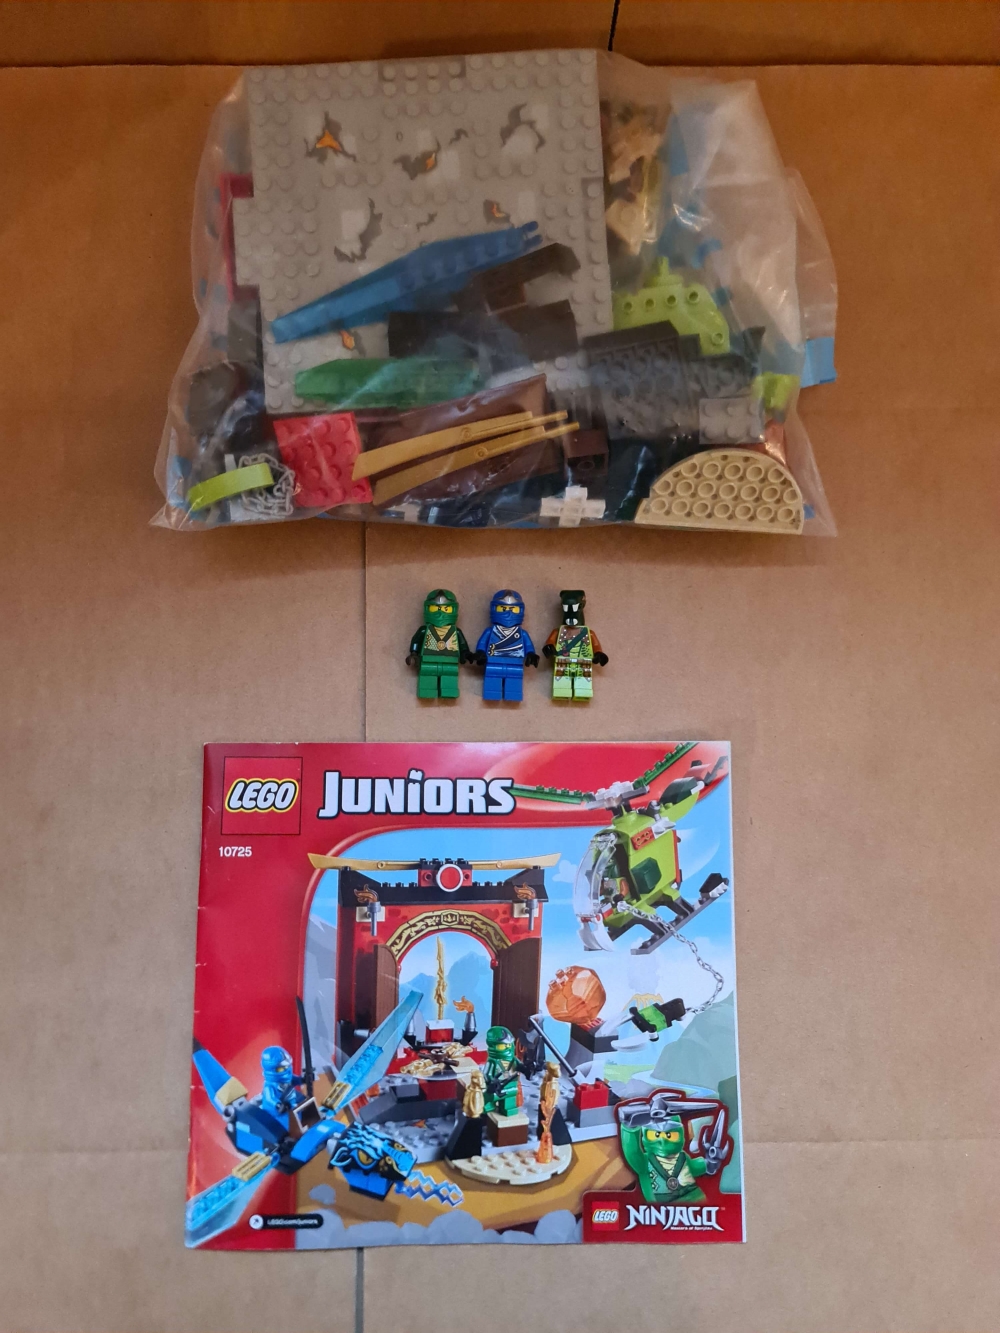 Sett 10725 fra Lego Juniors : Ninjago serien.

Meget pent. Komplett med manual. 